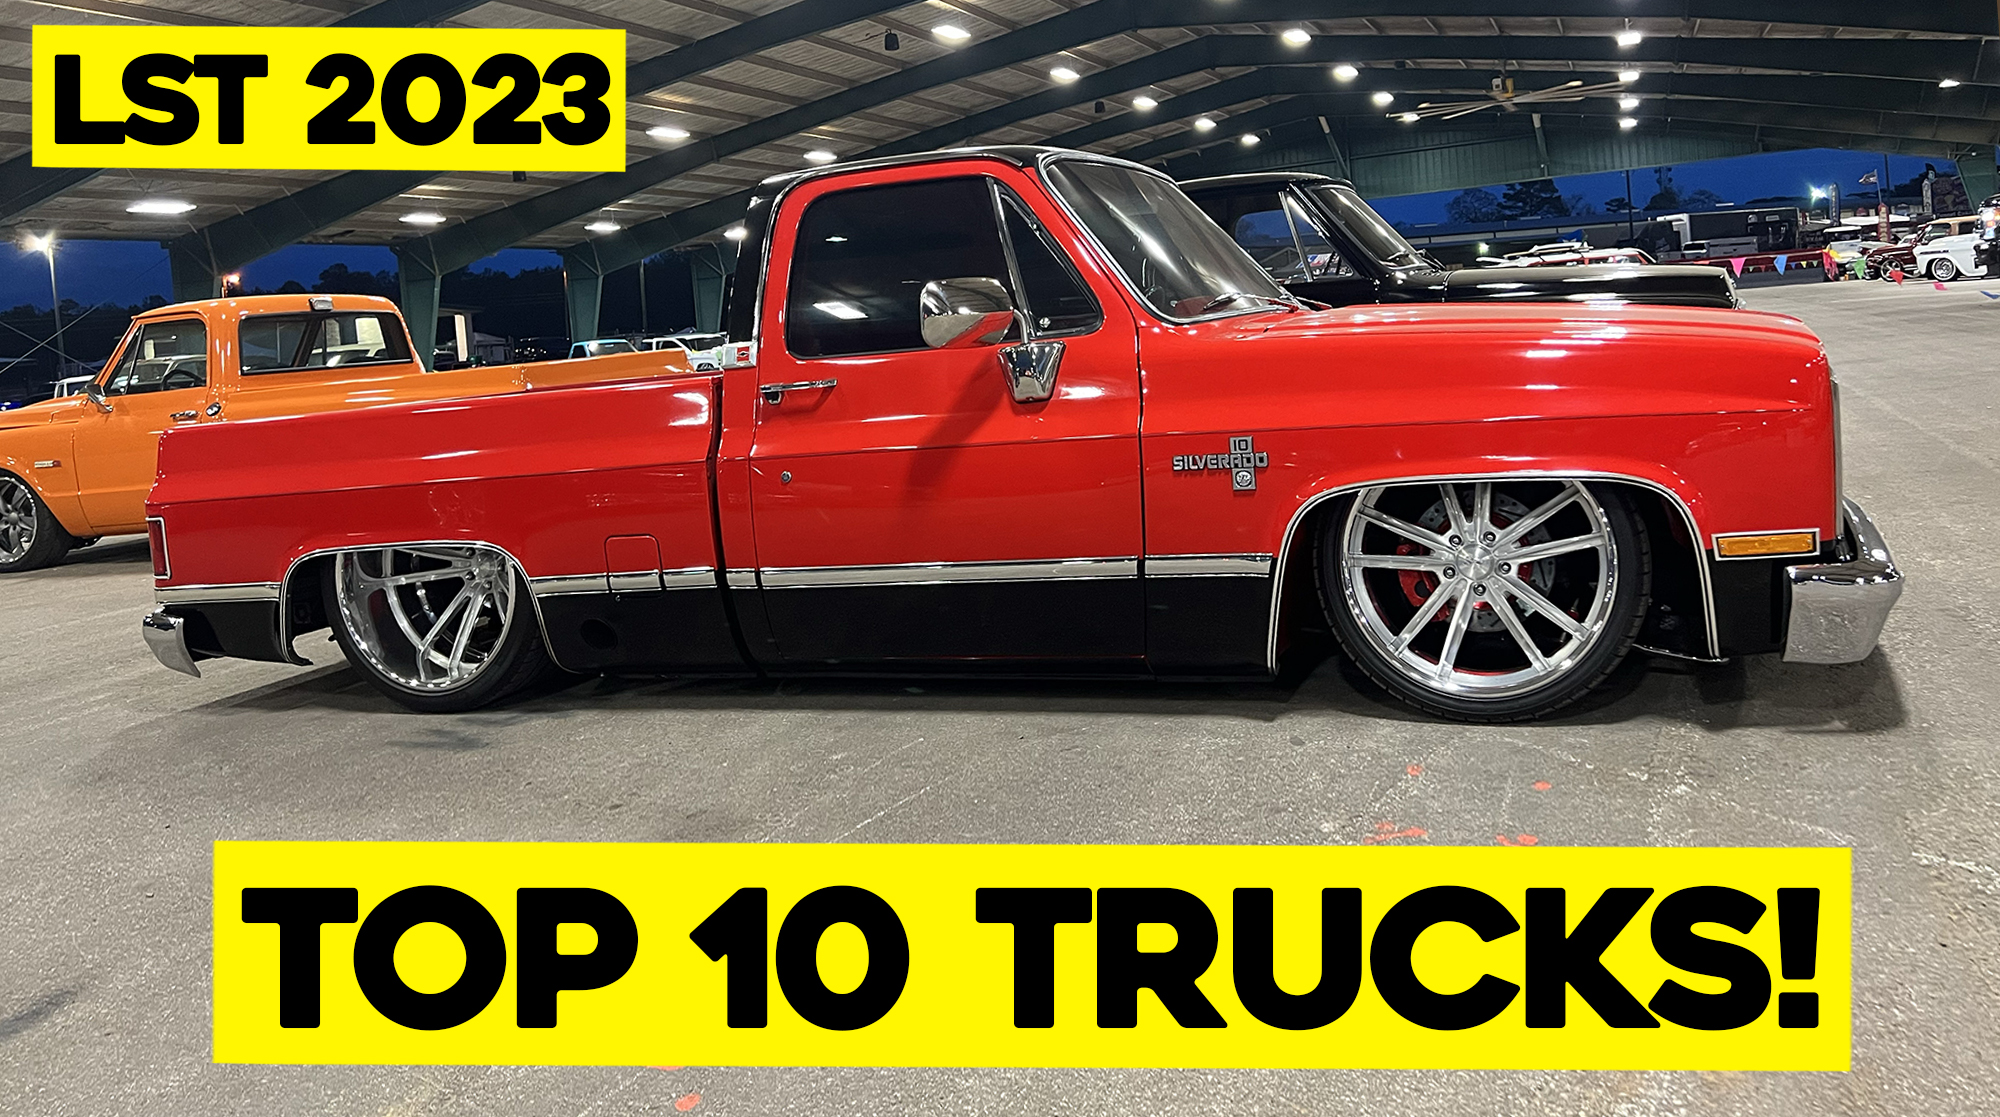 TOP 10 TRUCKS FROM LST 2023! Street Trucks